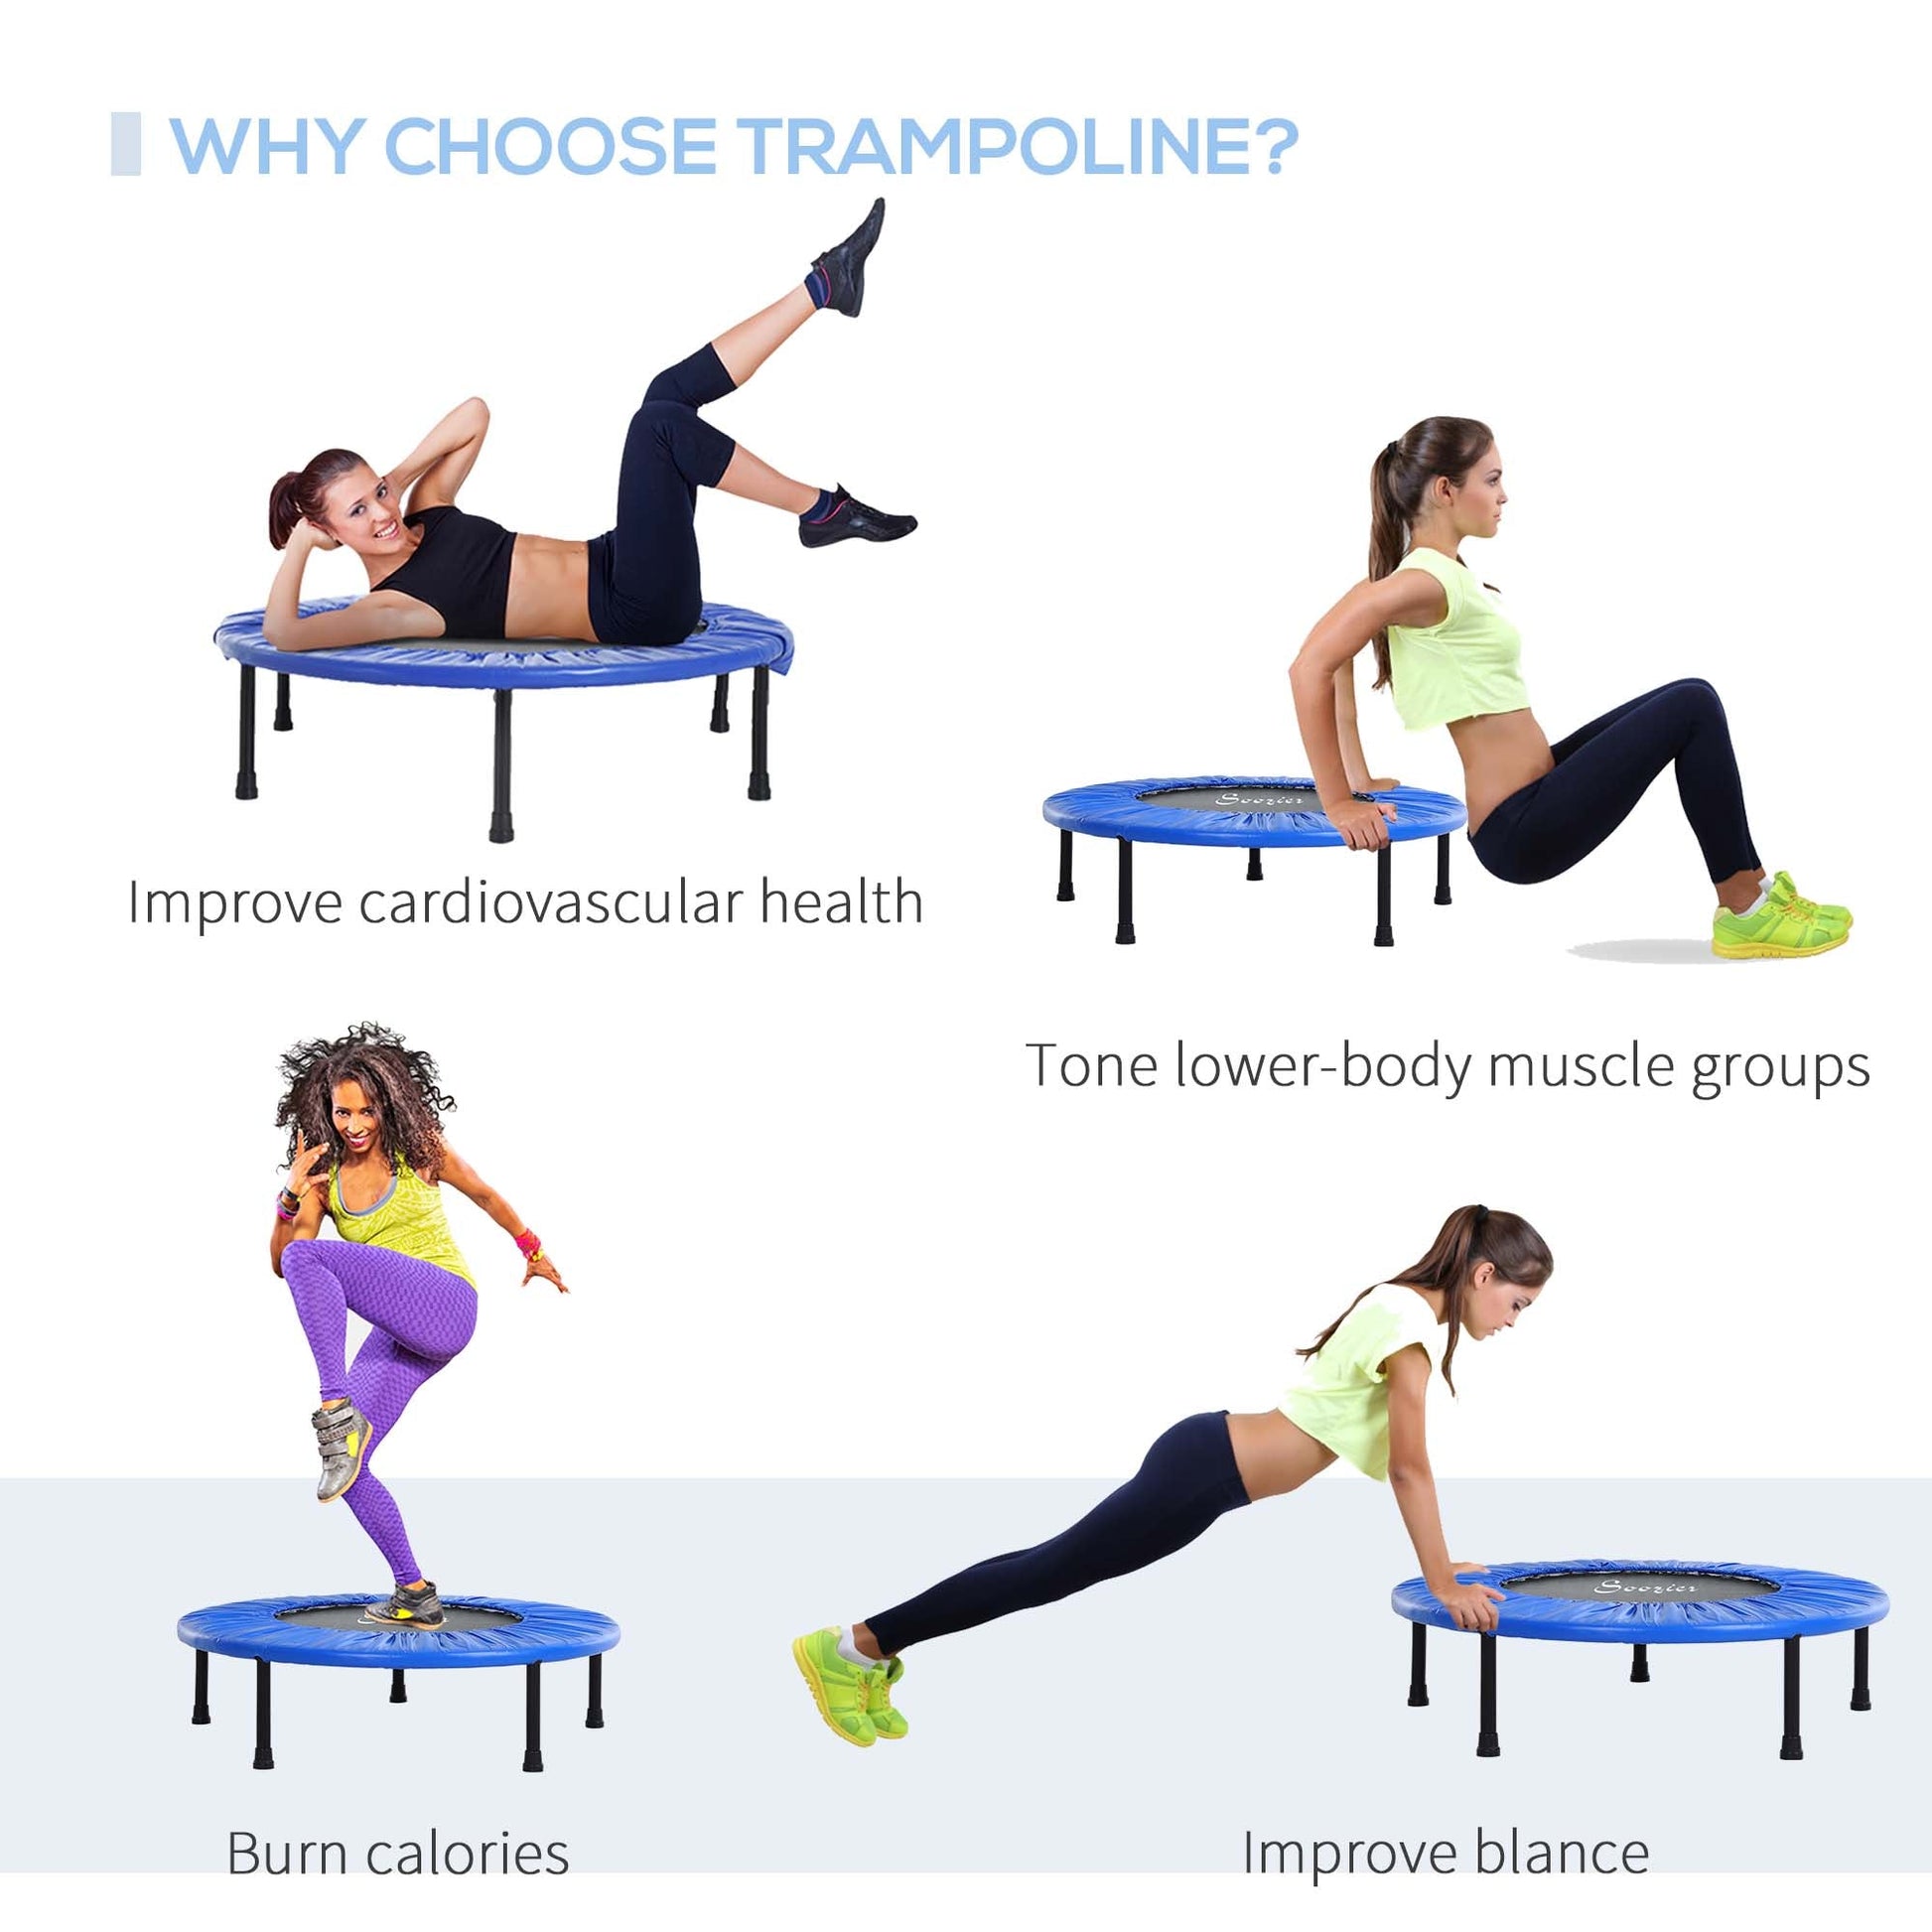 Φ38” Foldable Mini Fitness Trampoline Home Gym Yoga Exercise Rebounder Indoor Outdoor Jumper with Safety Pad, Blue/Black at Gallery Canada